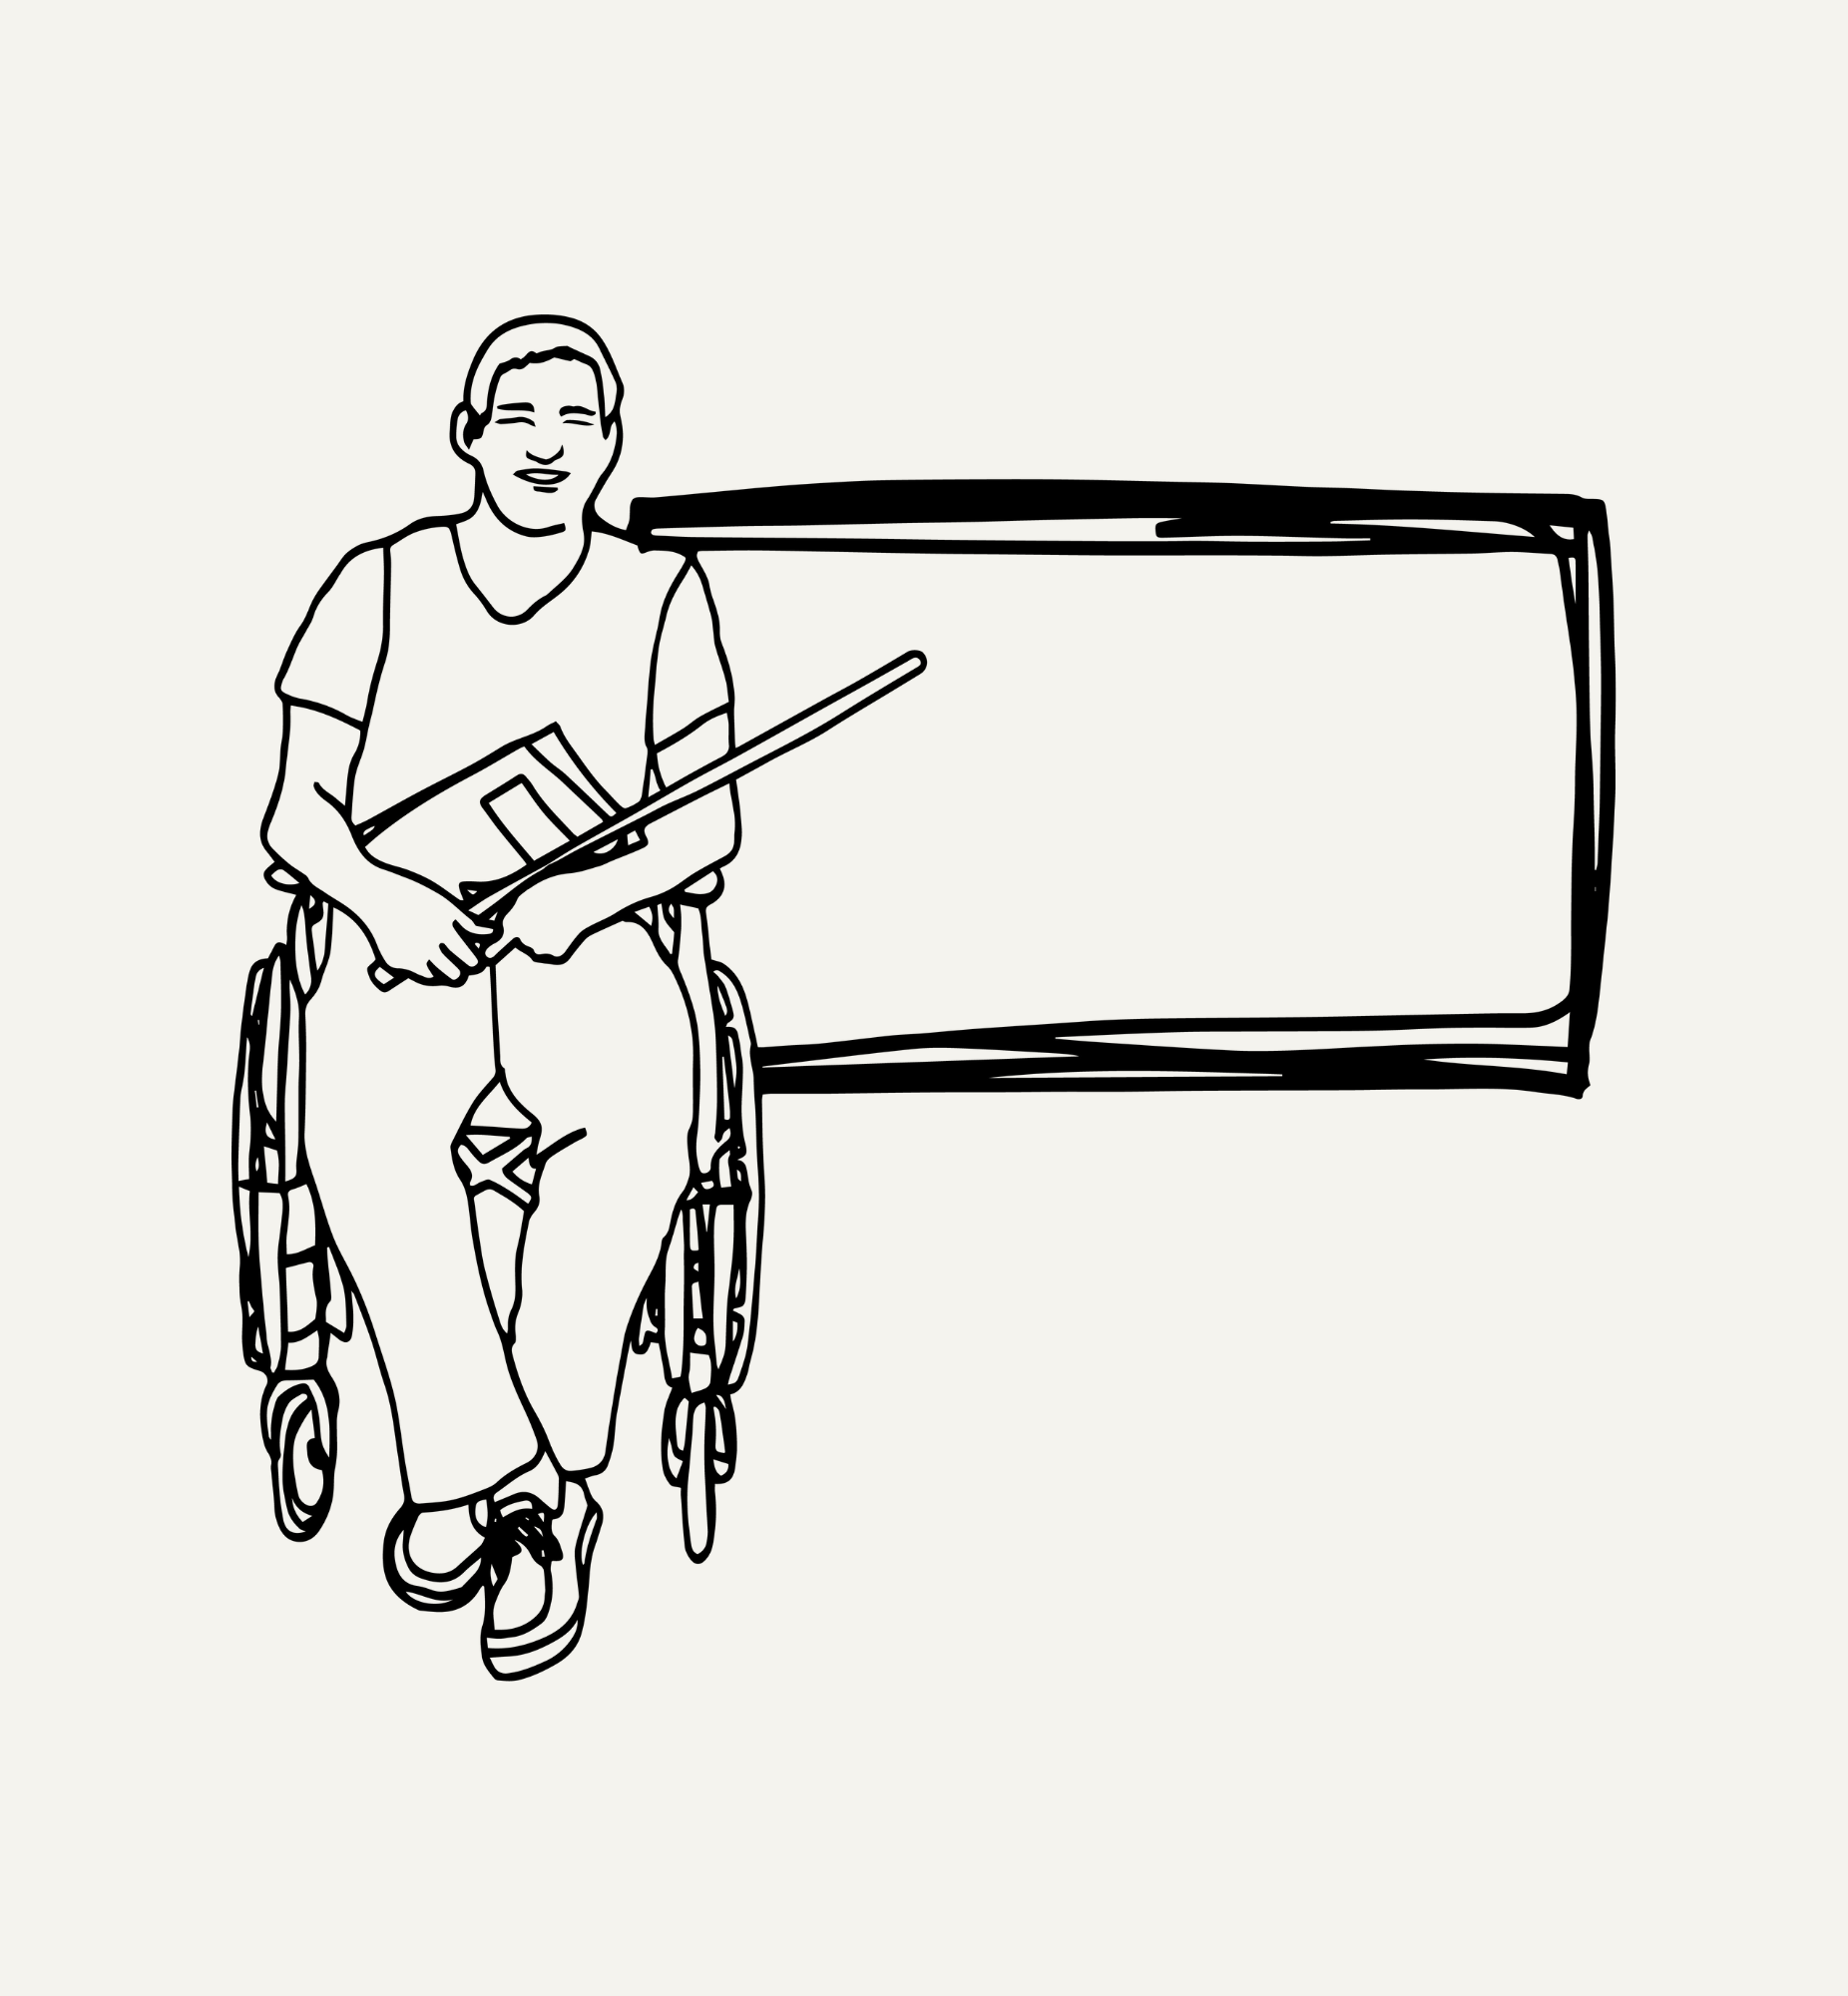 Na grafice rysunek mężczyzny na wózku ze wskaźnikiem i książką. Za nim tablica.